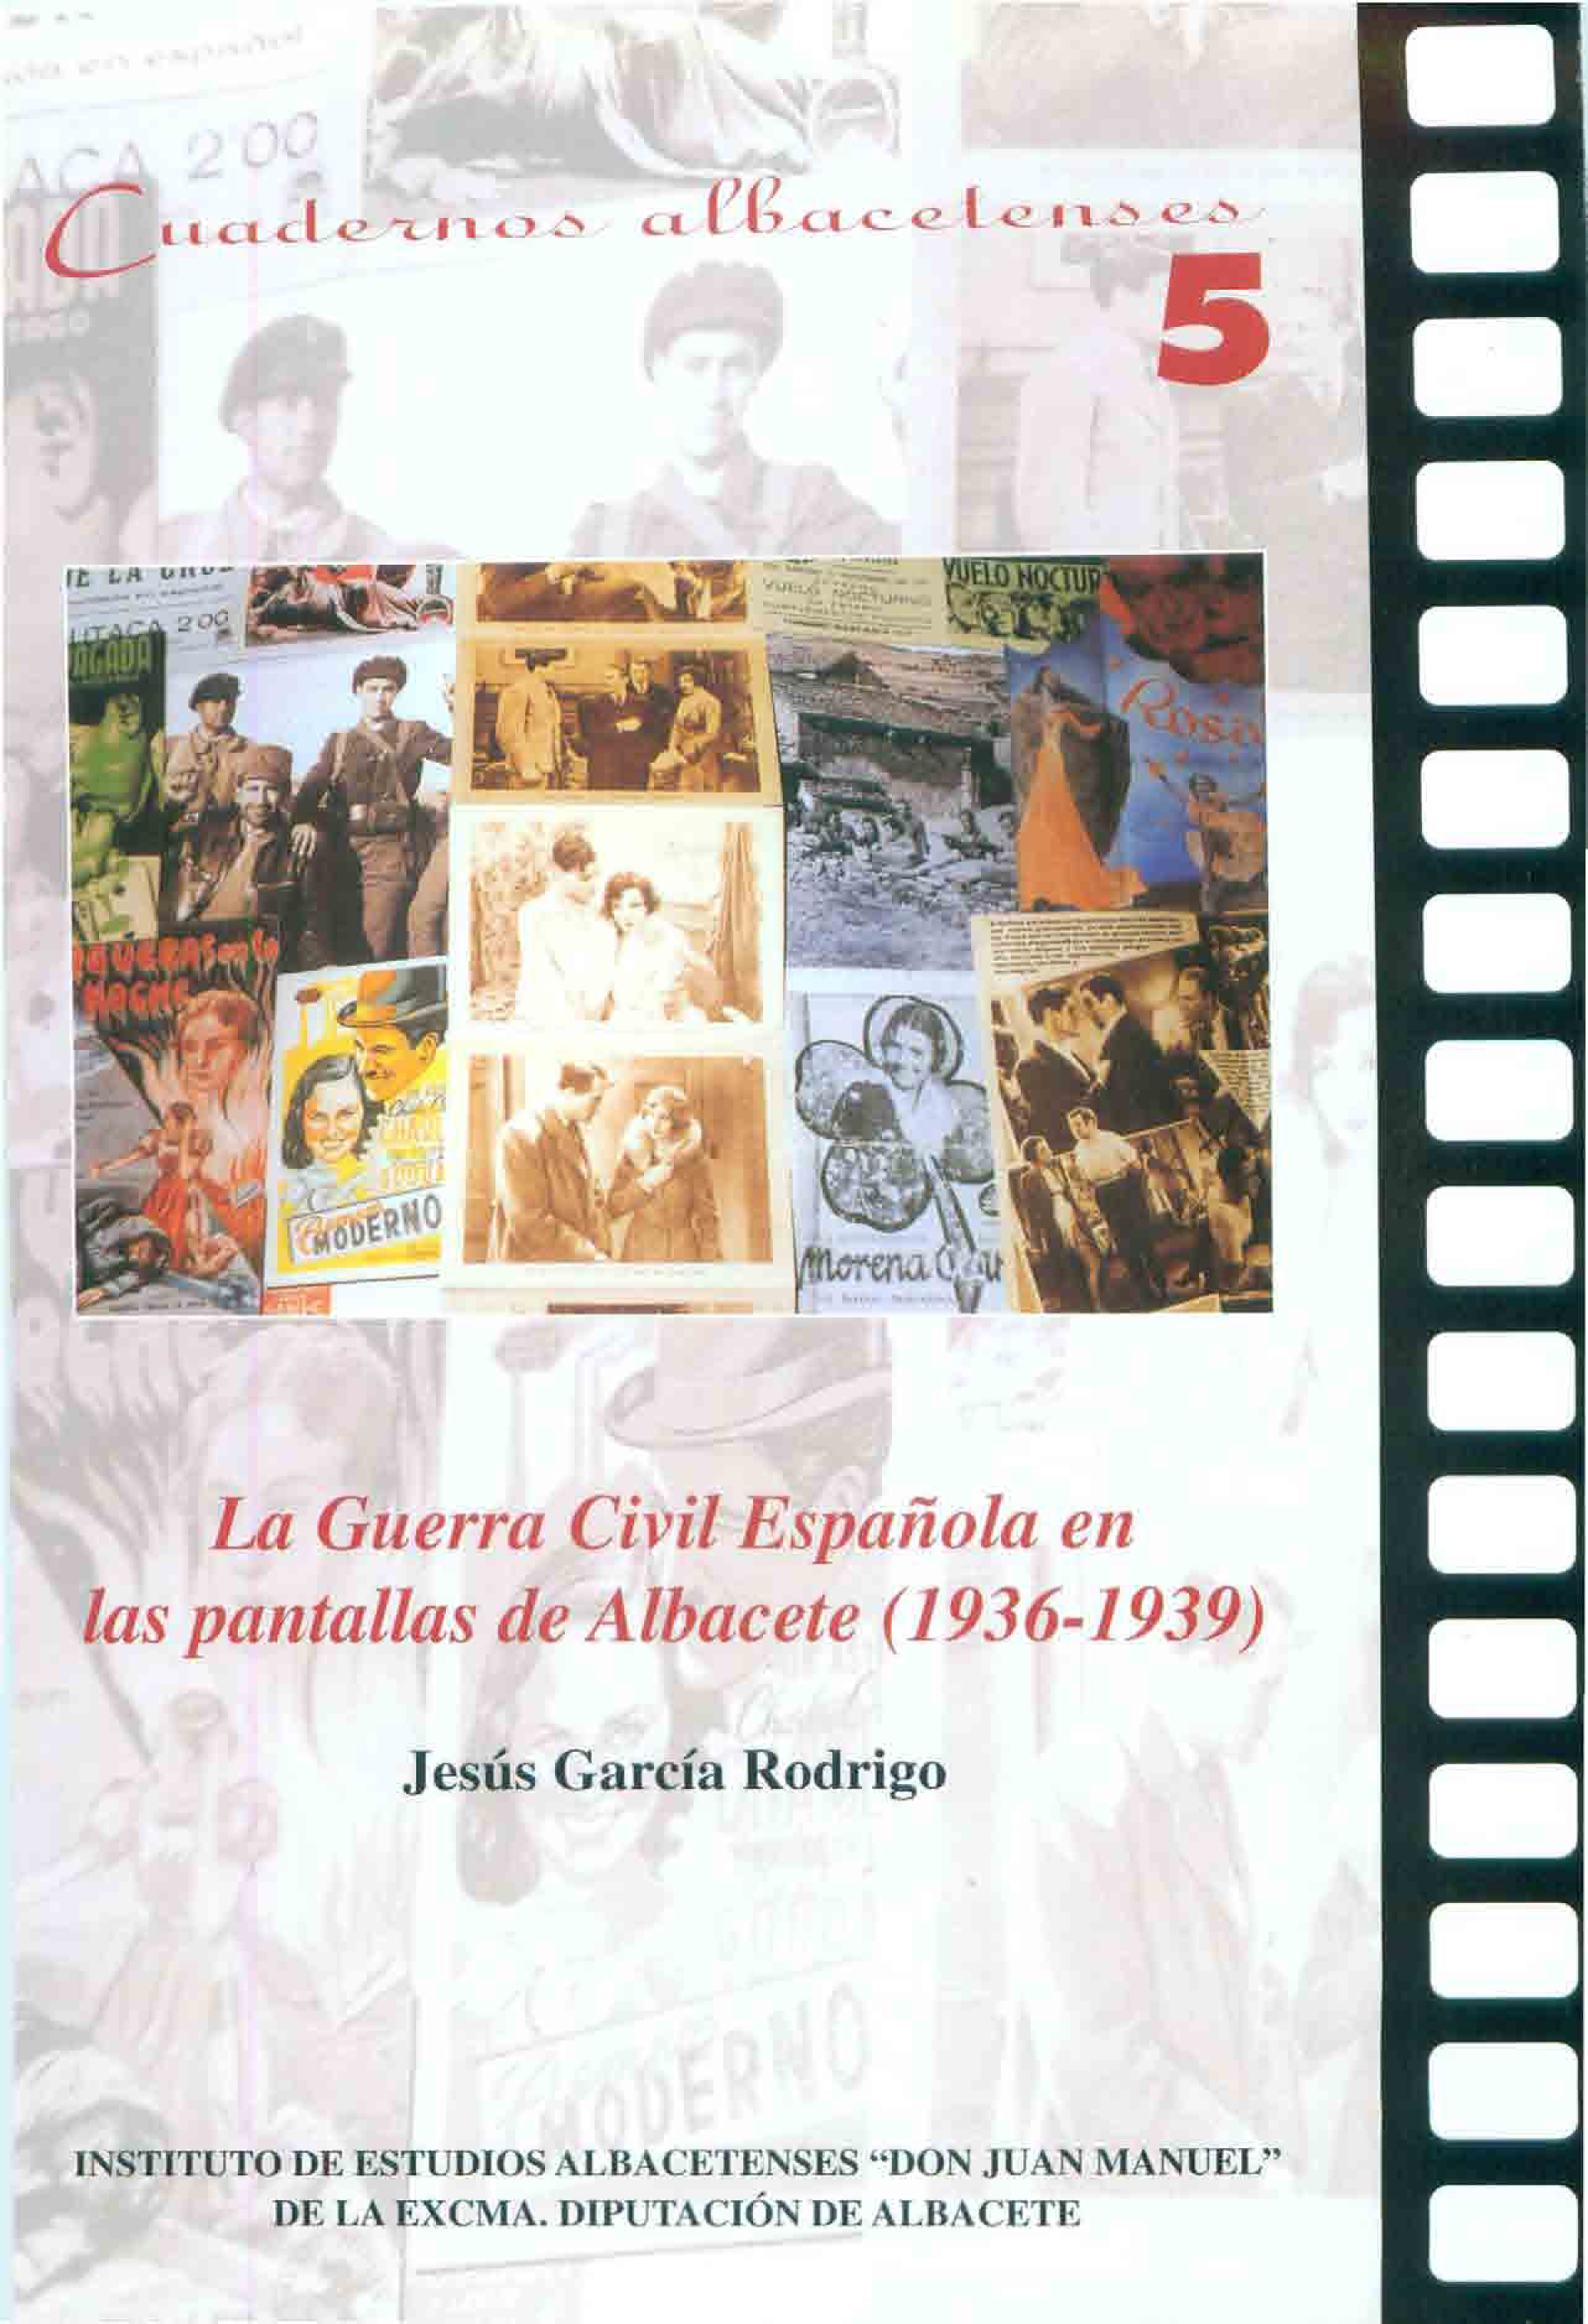 Imagen de portada del libro La Guerra Civil Española en las pantallas de Albacete (1936-1939)